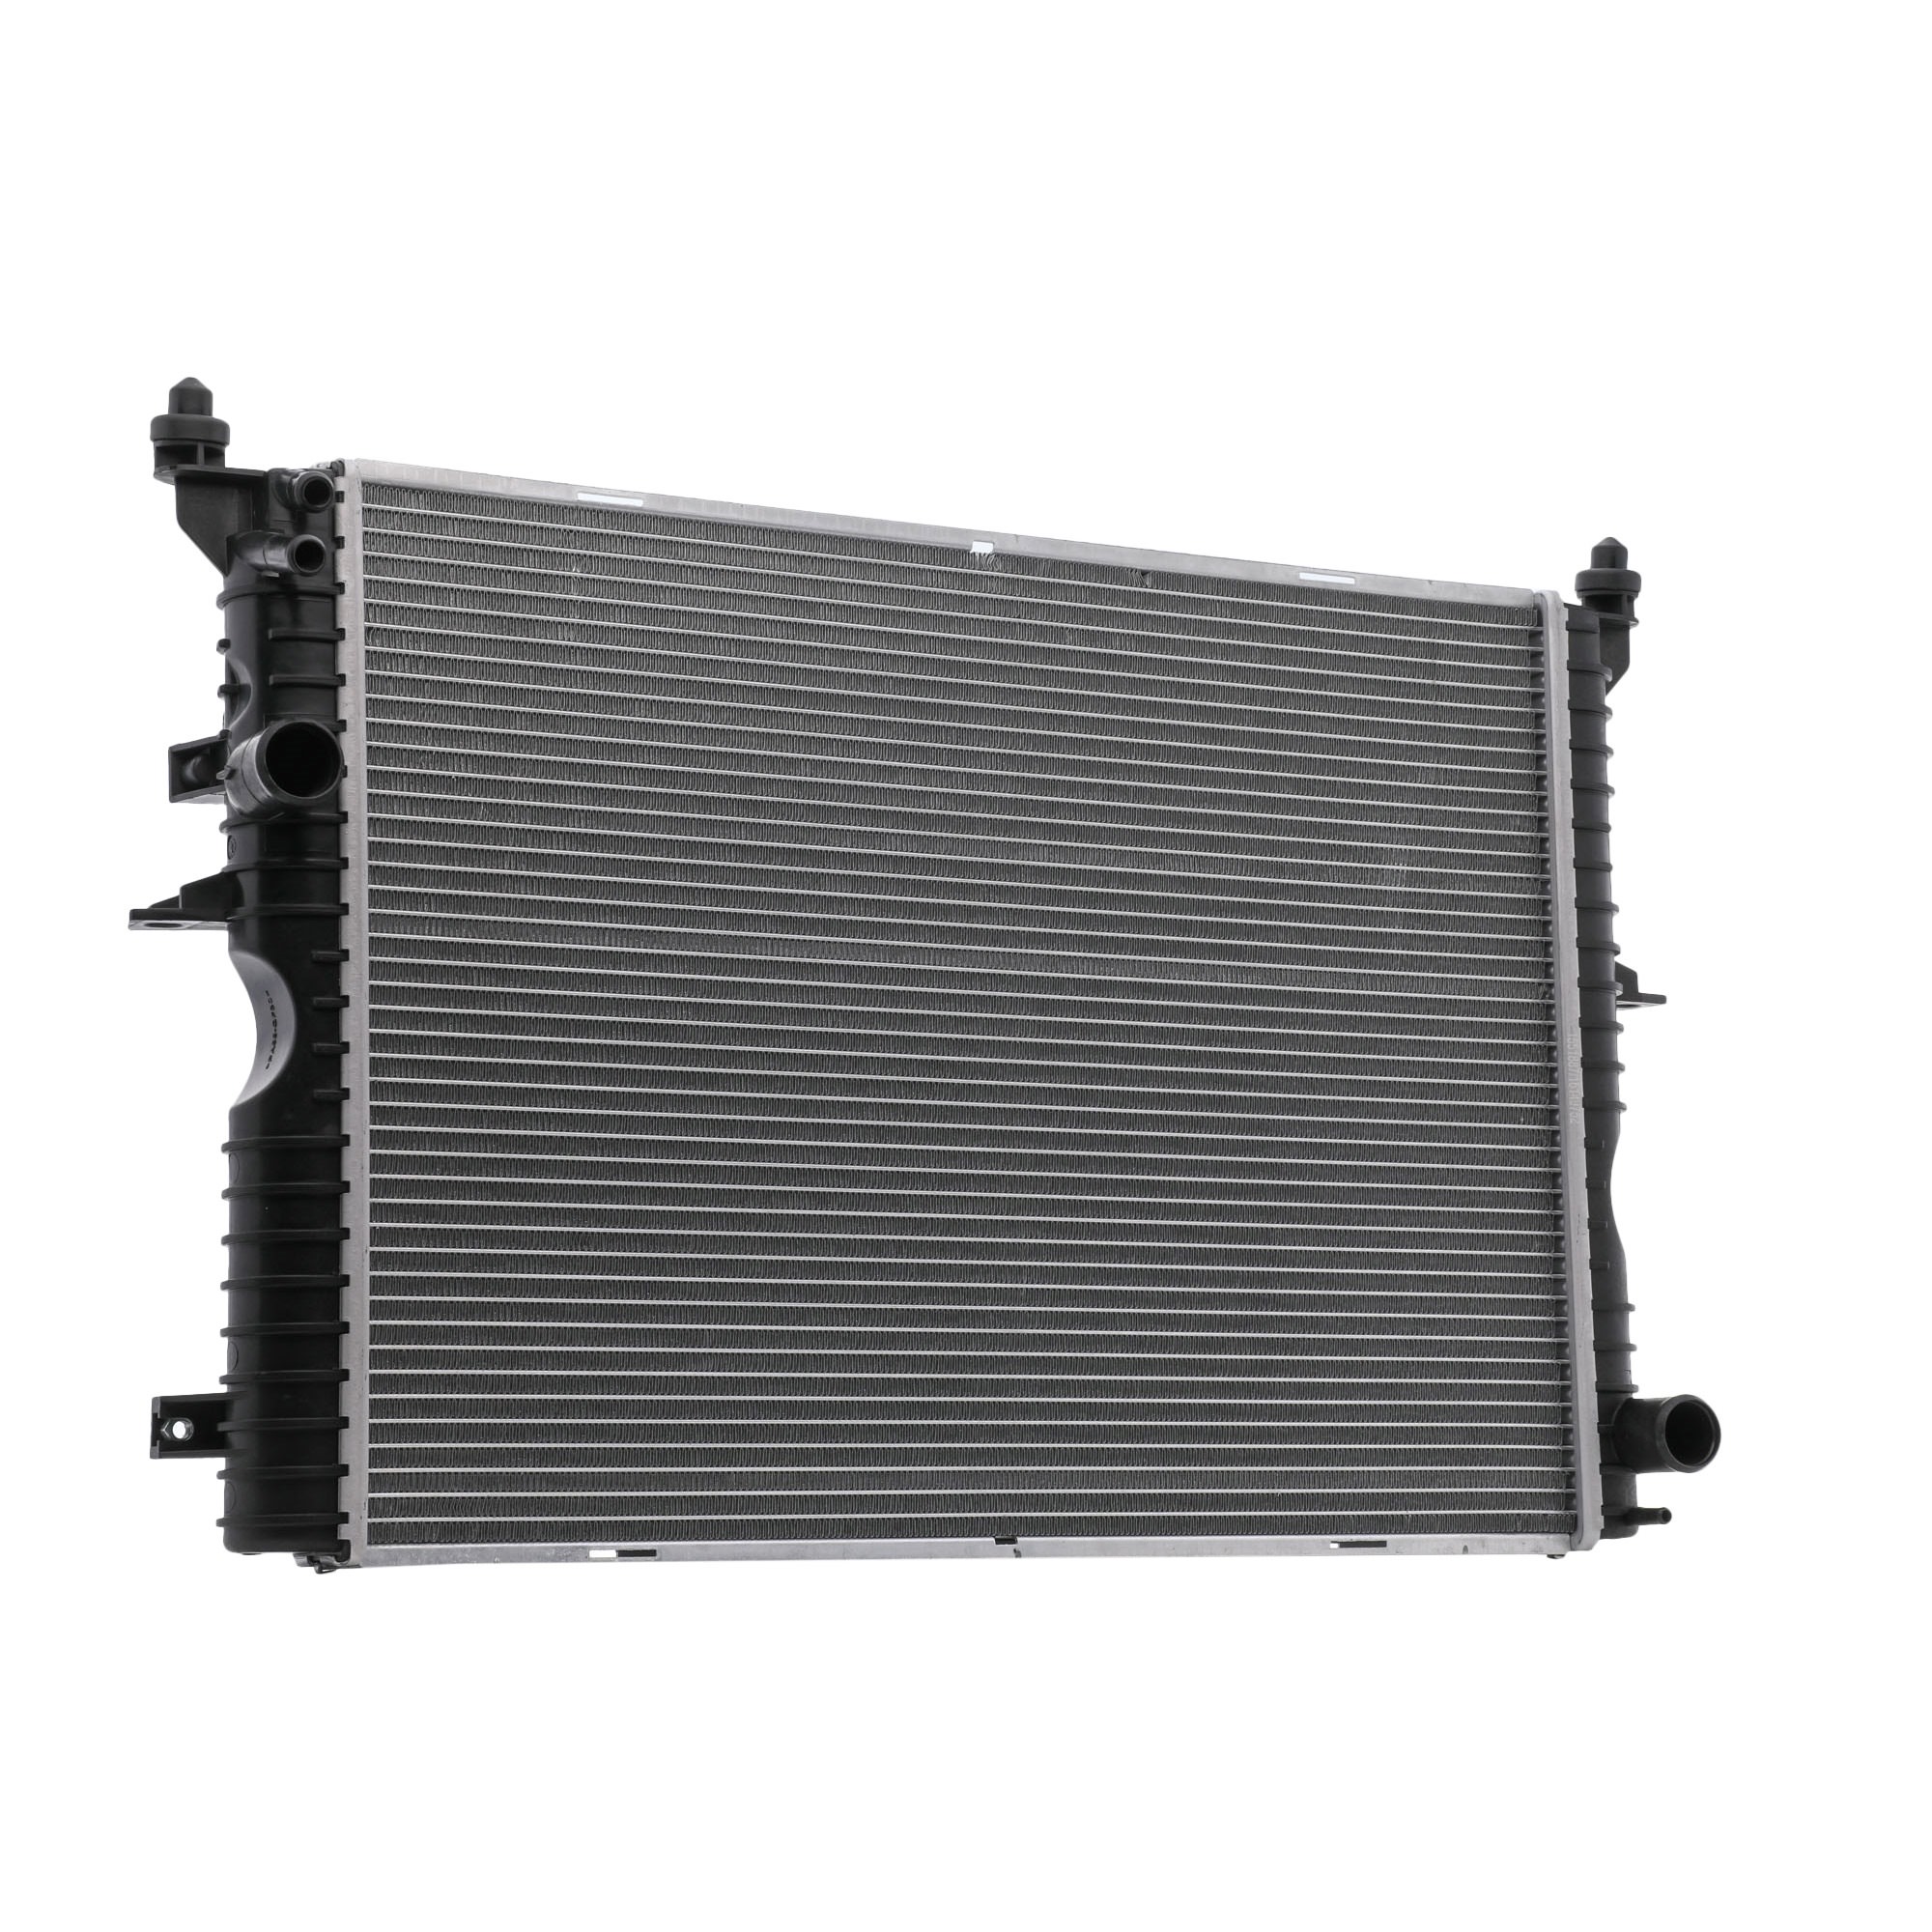 RIDEX Aluminium, 594 x 439 x 40 mm, Brazed cooling fins Radiator 470R1045 buy